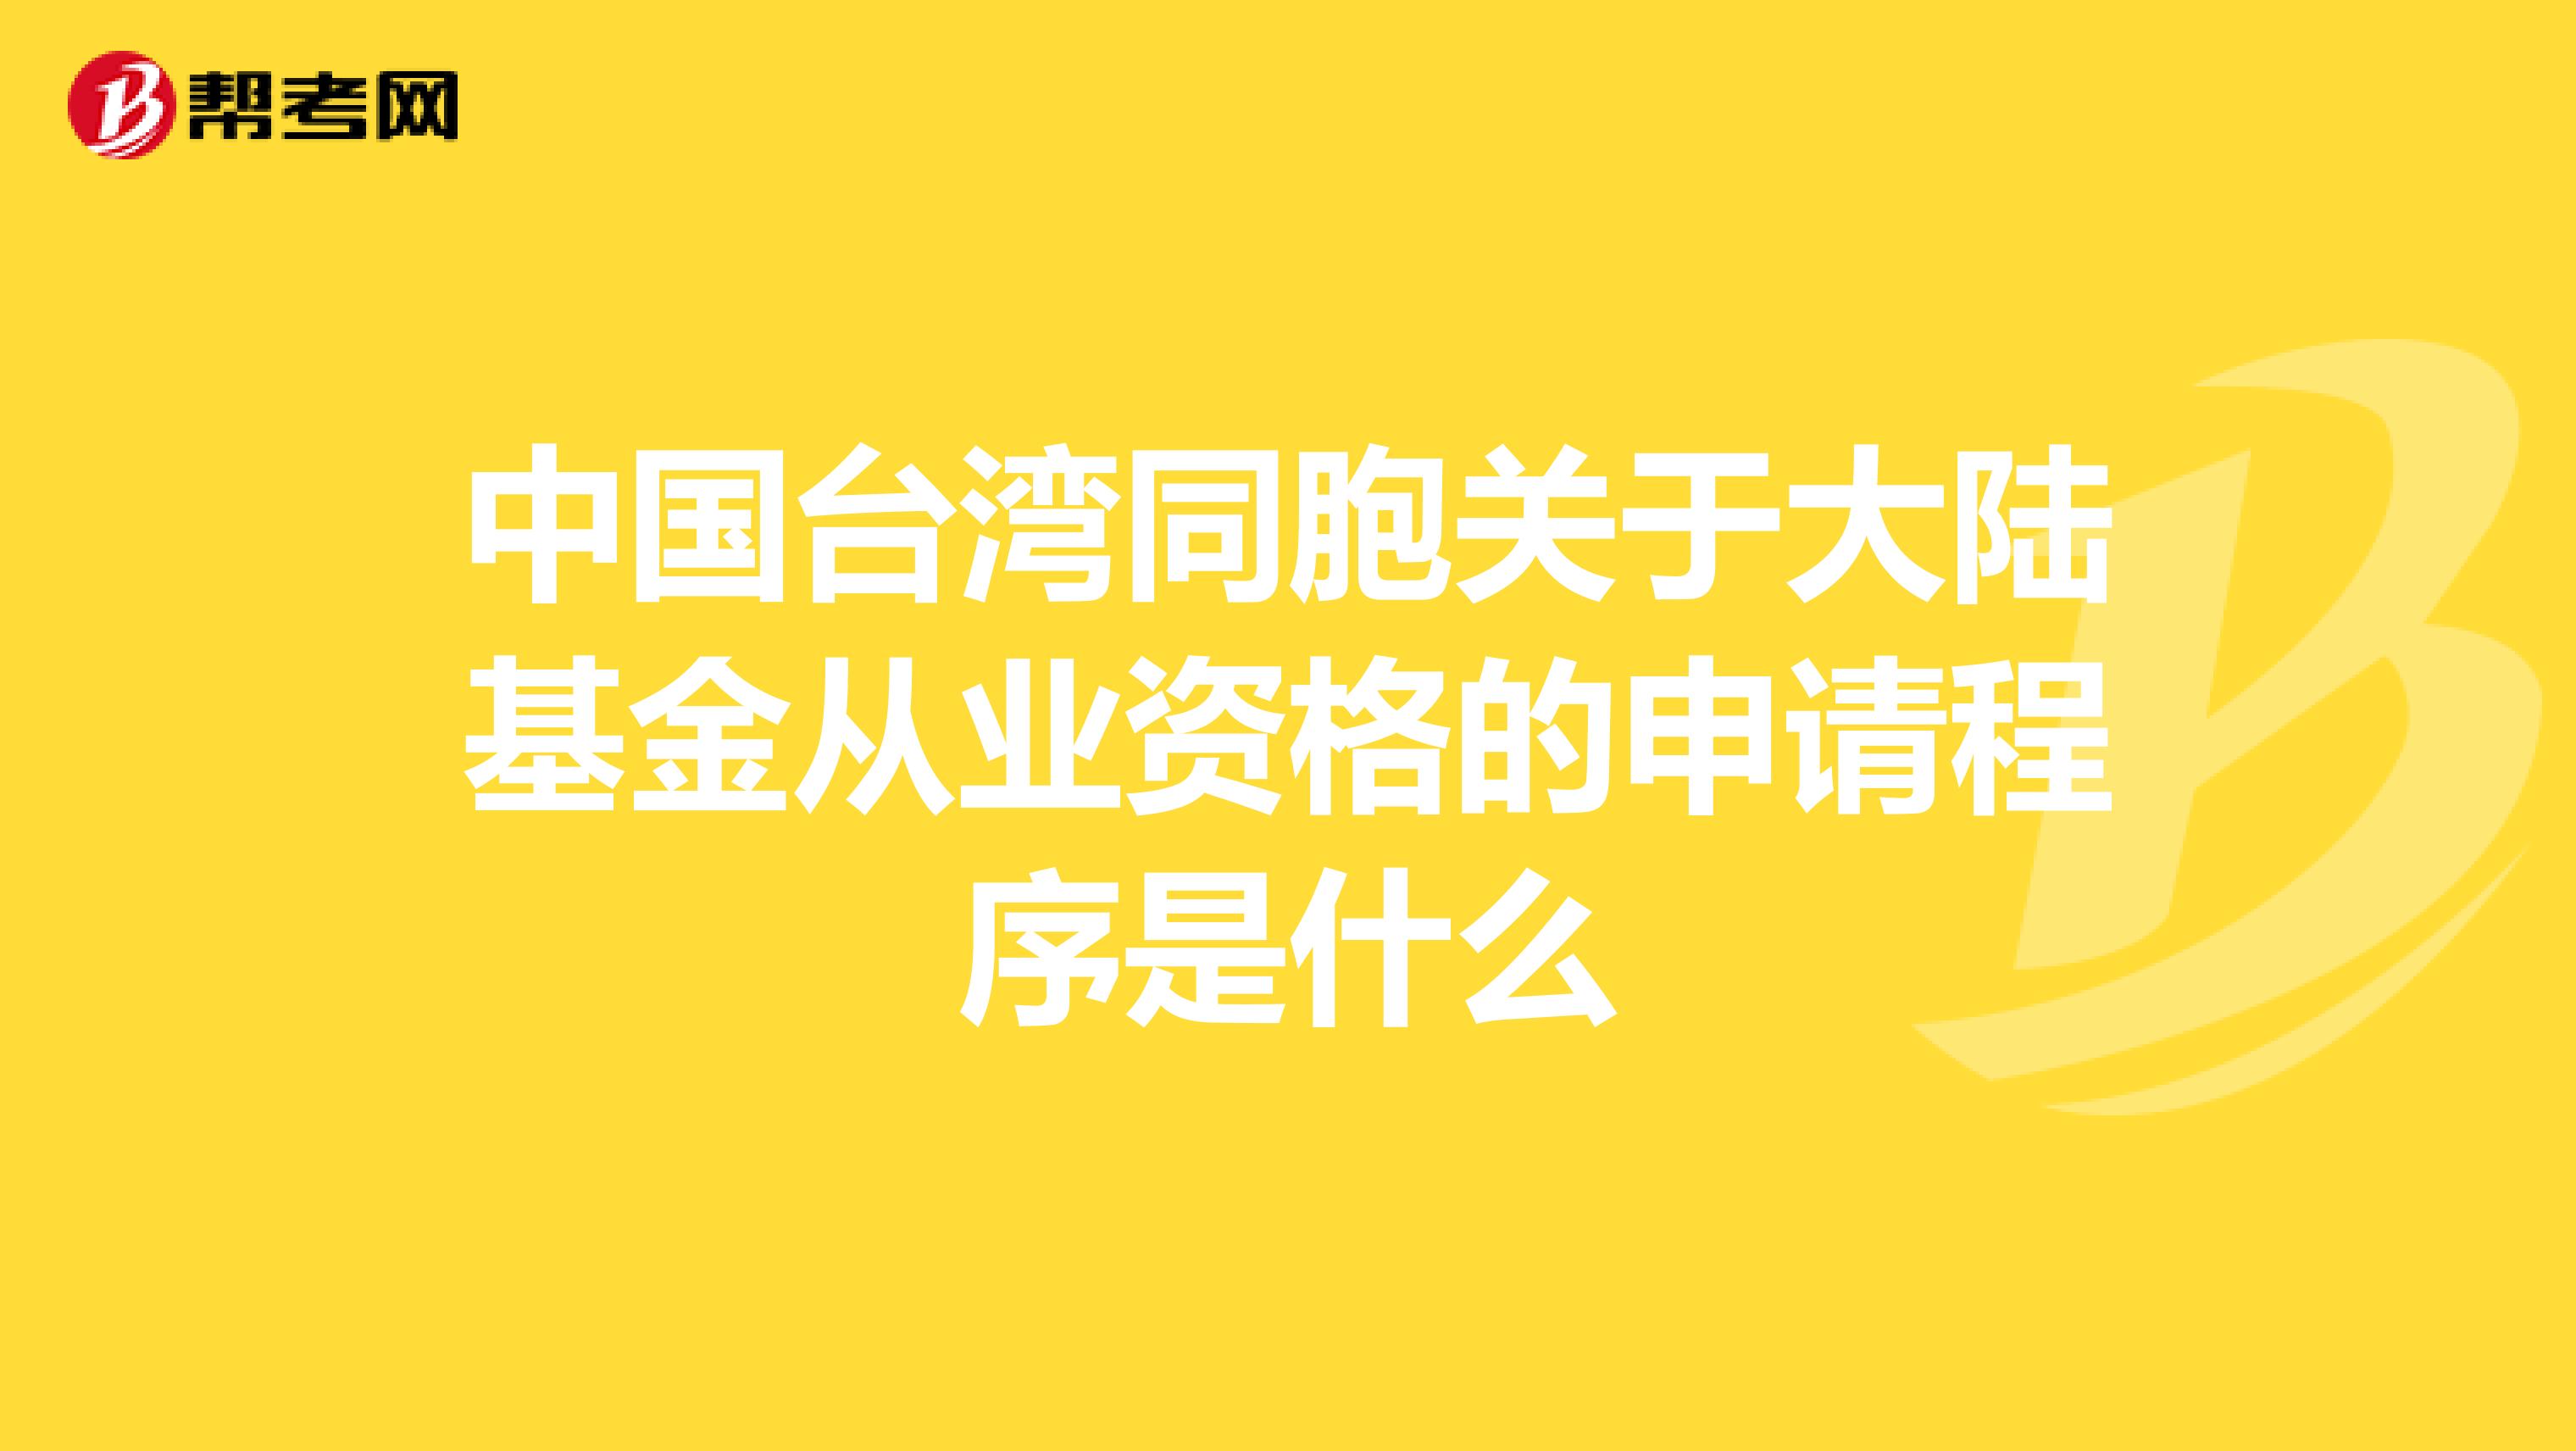 中国台湾同胞关于大陆基金从业资格的申请程序是什么